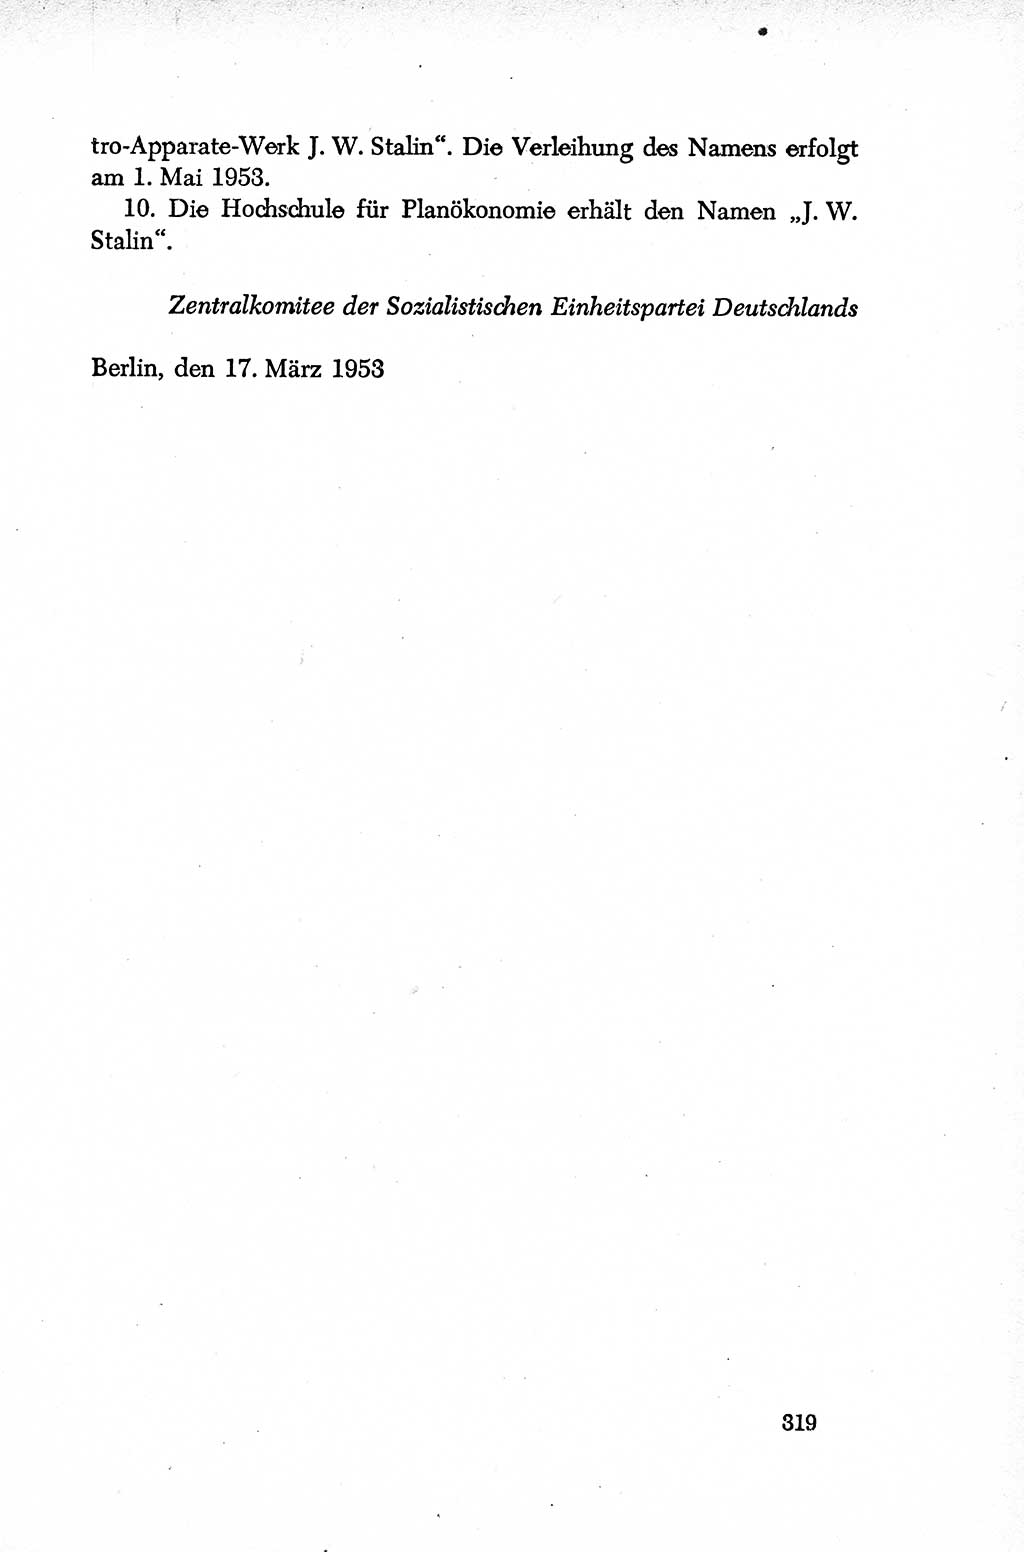 Dokumente der Sozialistischen Einheitspartei Deutschlands (SED) [Deutsche Demokratische Republik (DDR)] 1952-1953, Seite 319 (Dok. SED DDR 1952-1953, S. 319)